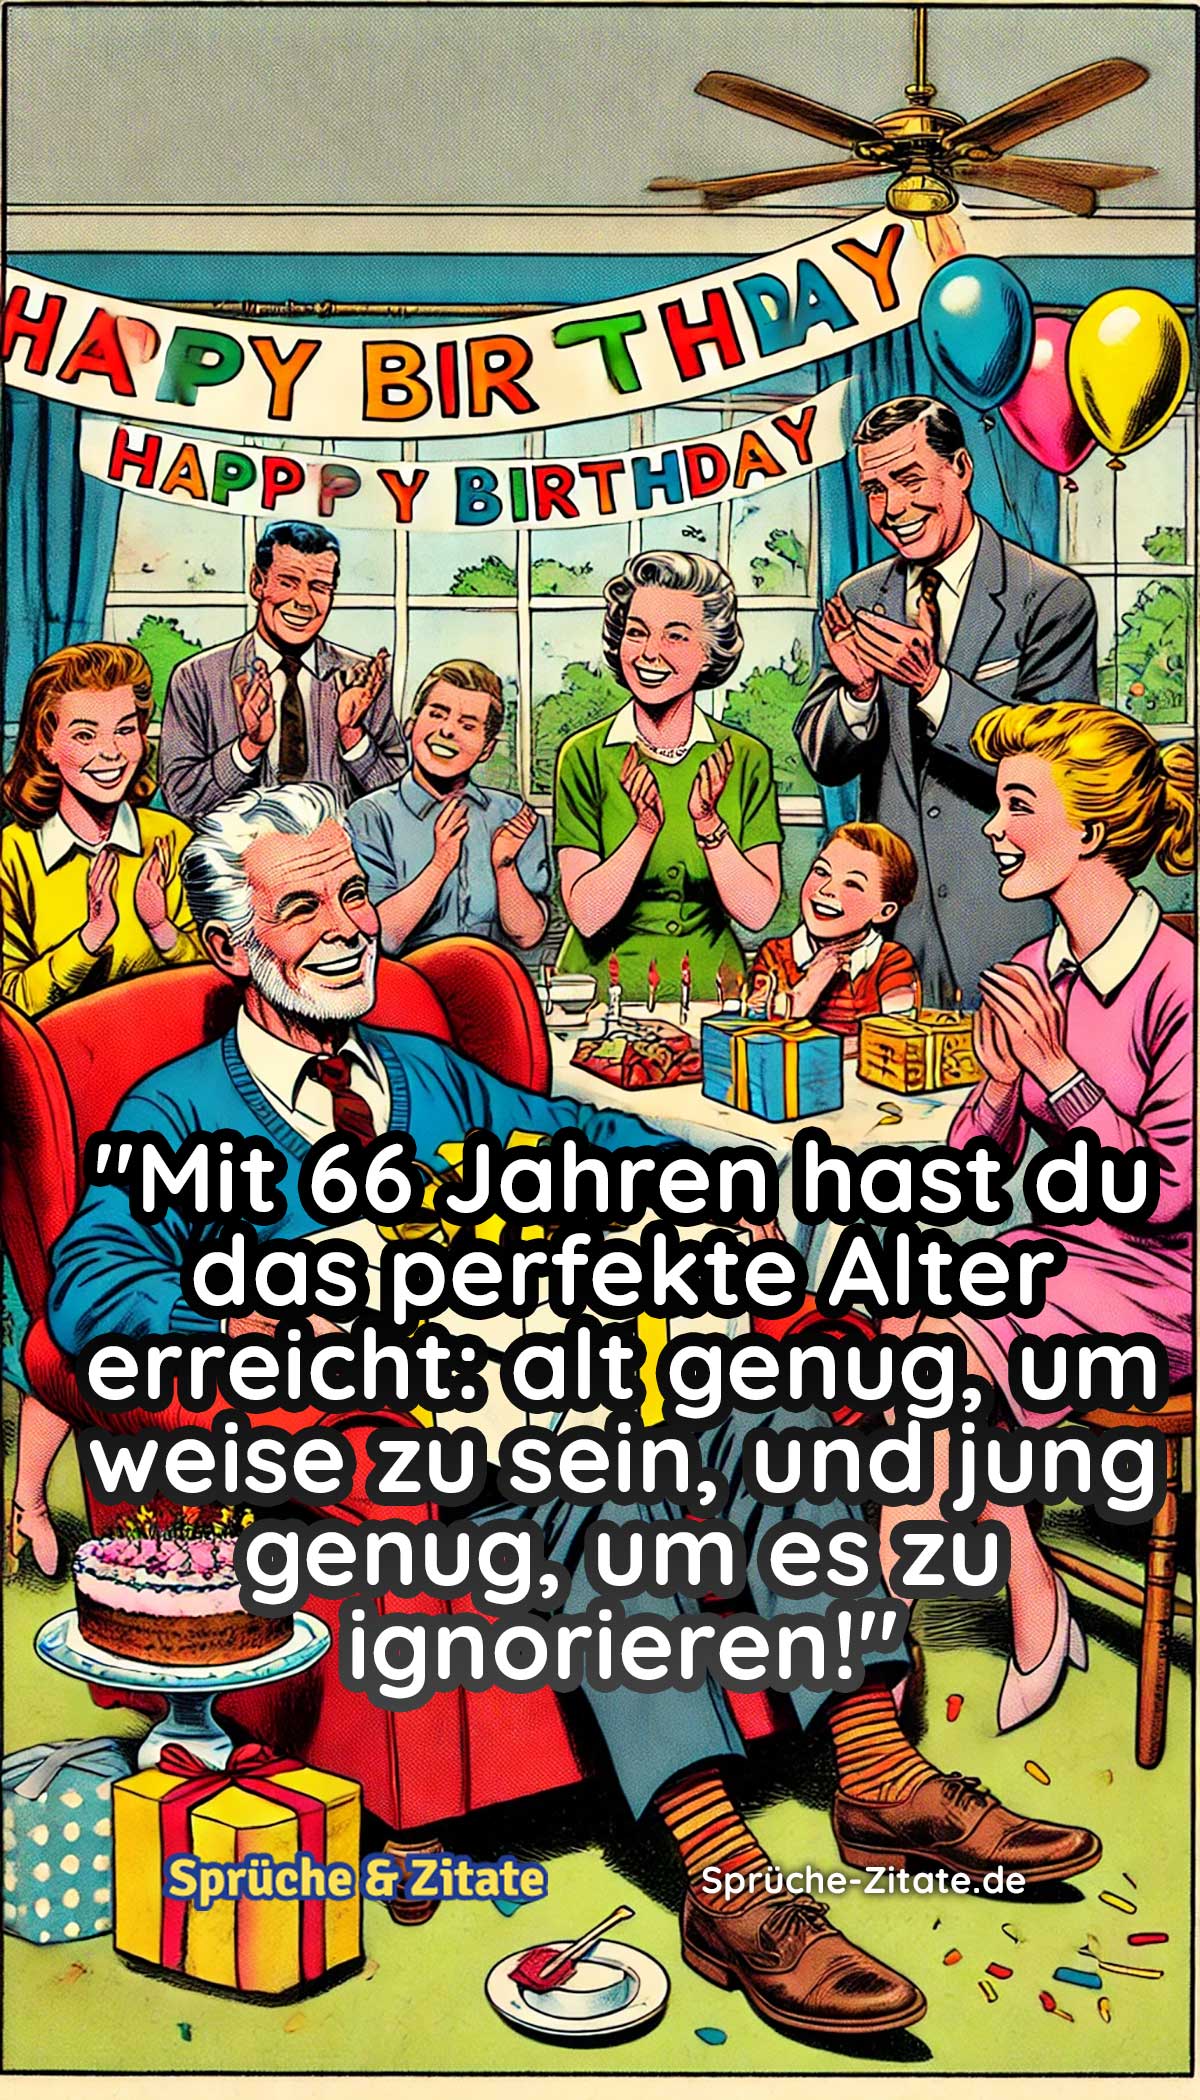 WhatsApp Geburtstagsbilder Kostenlos zum 66. Geburtstag 3